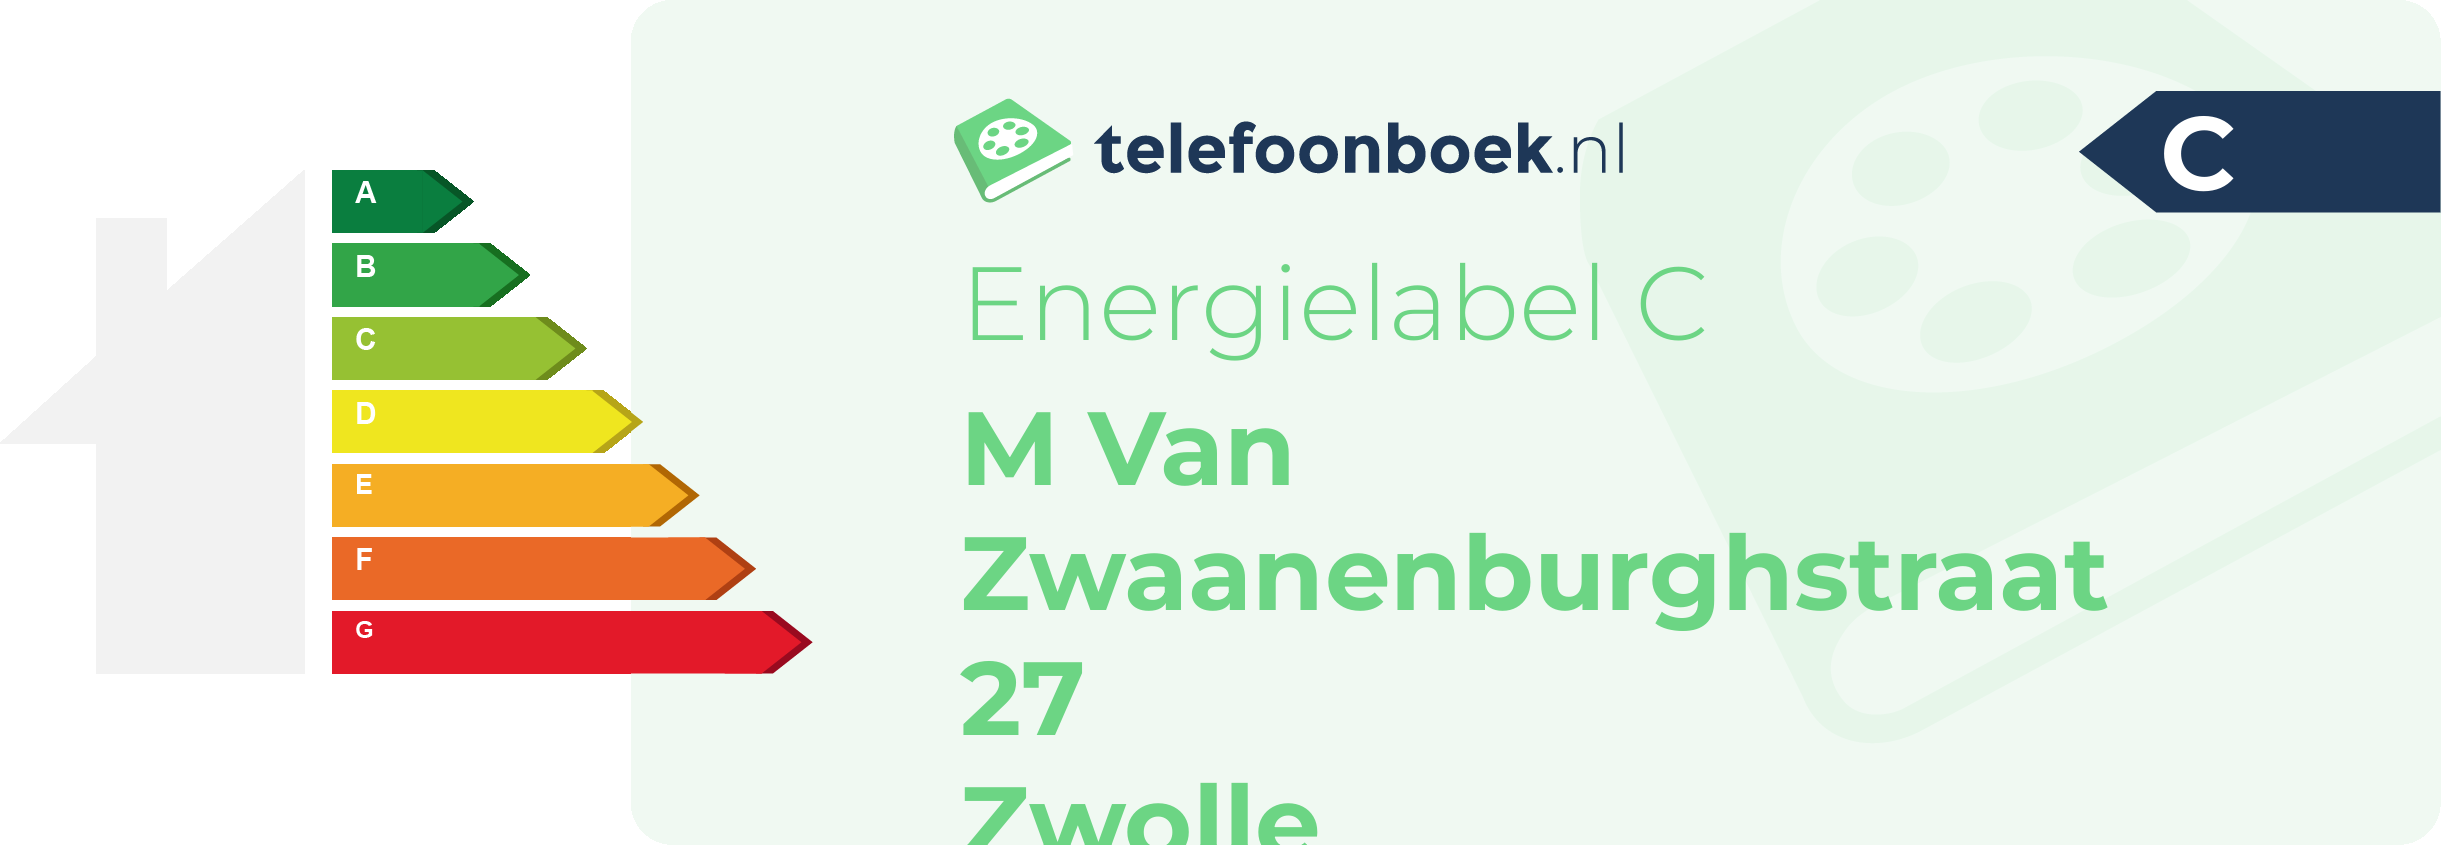 Energielabel M Van Zwaanenburghstraat 27 Zwolle